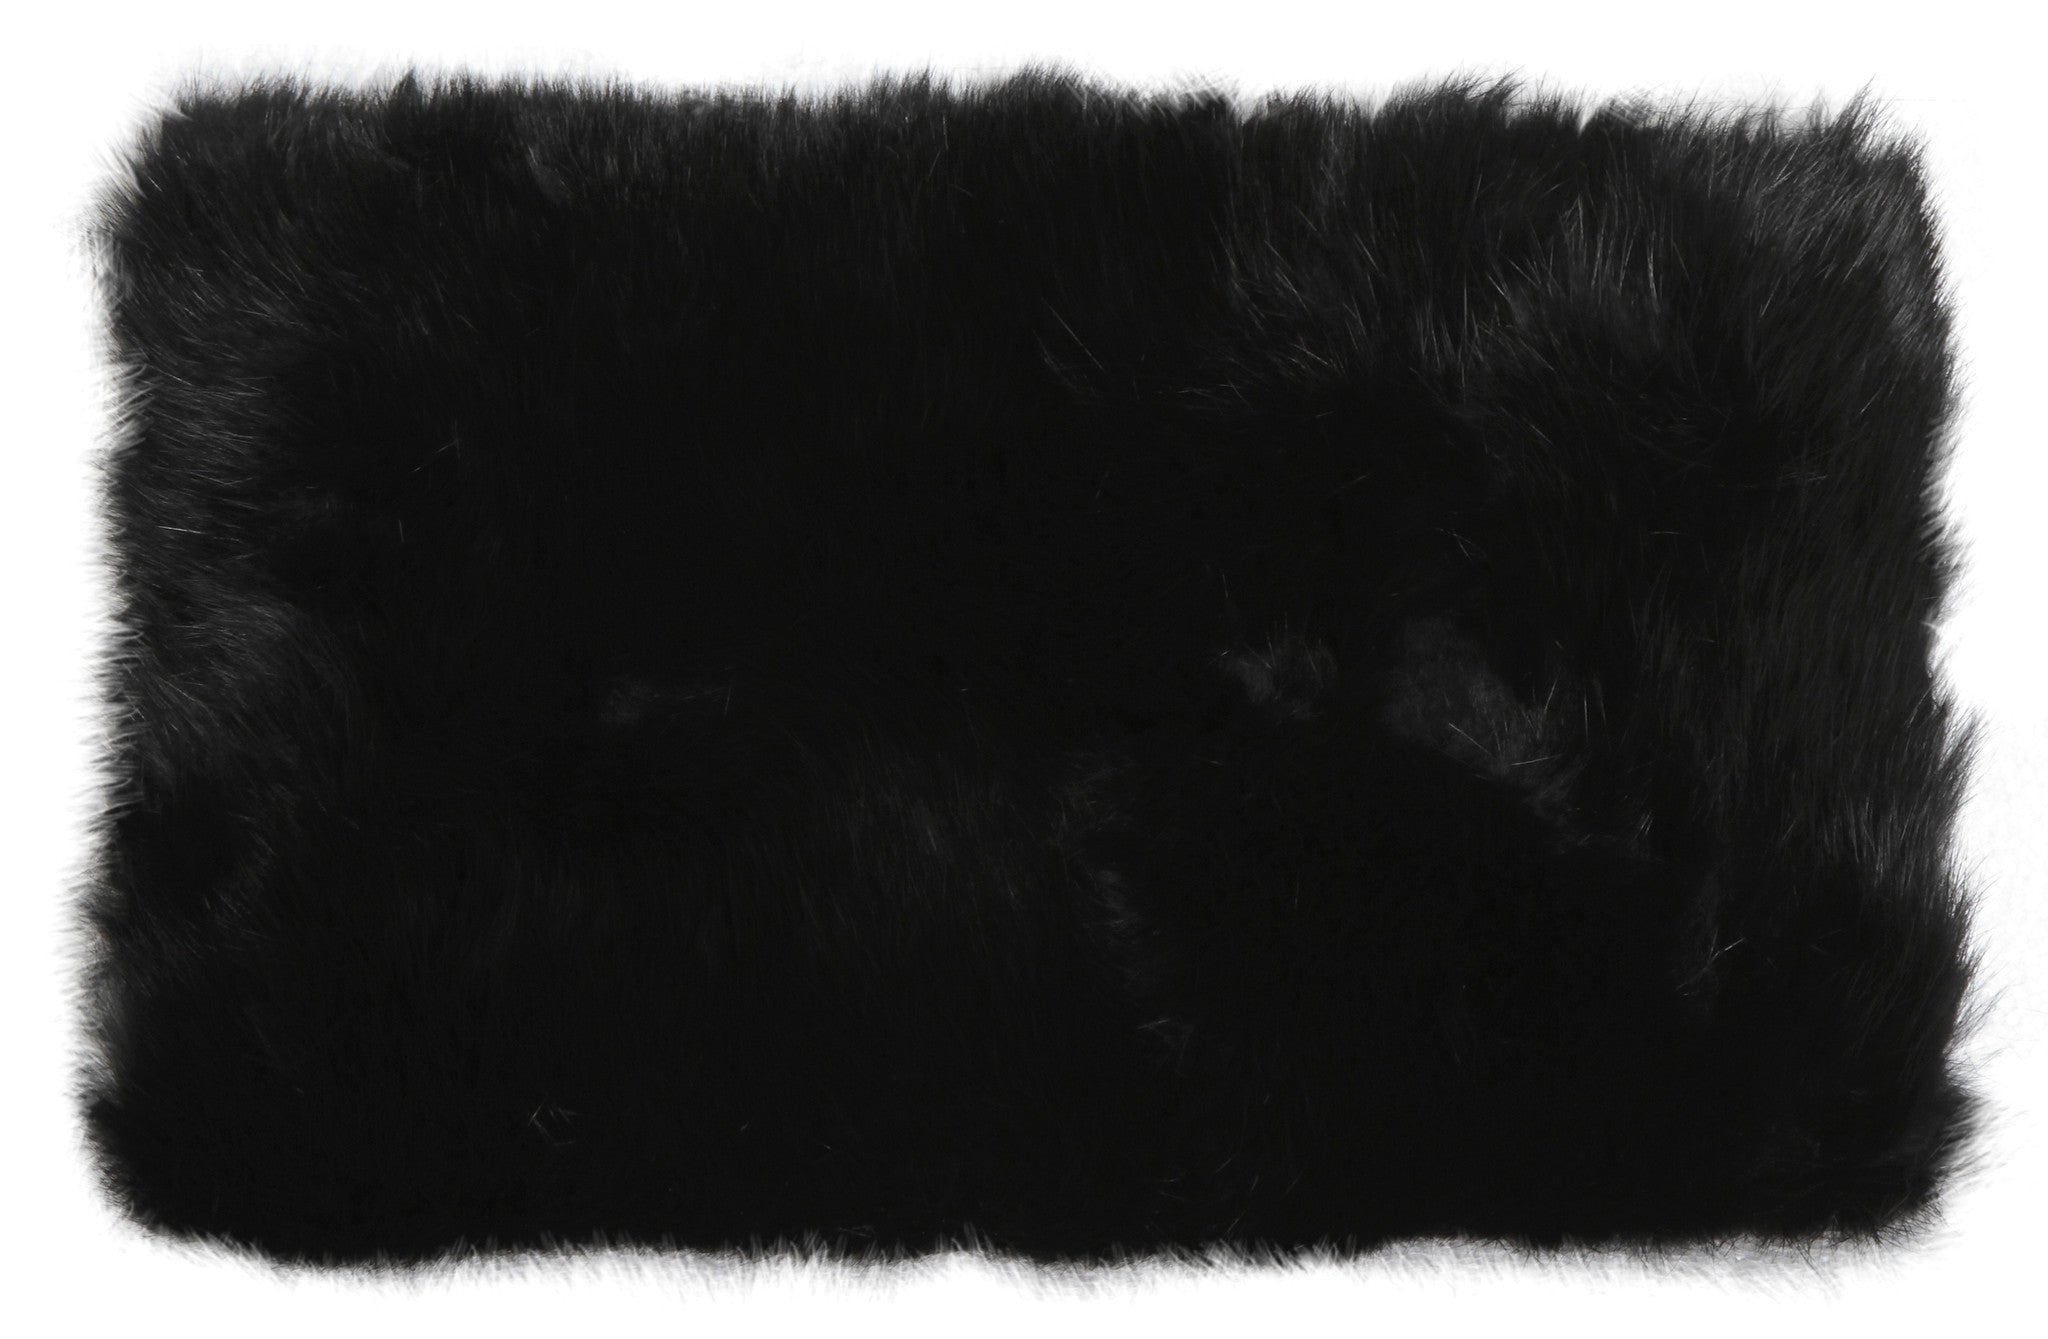 black fur clutch